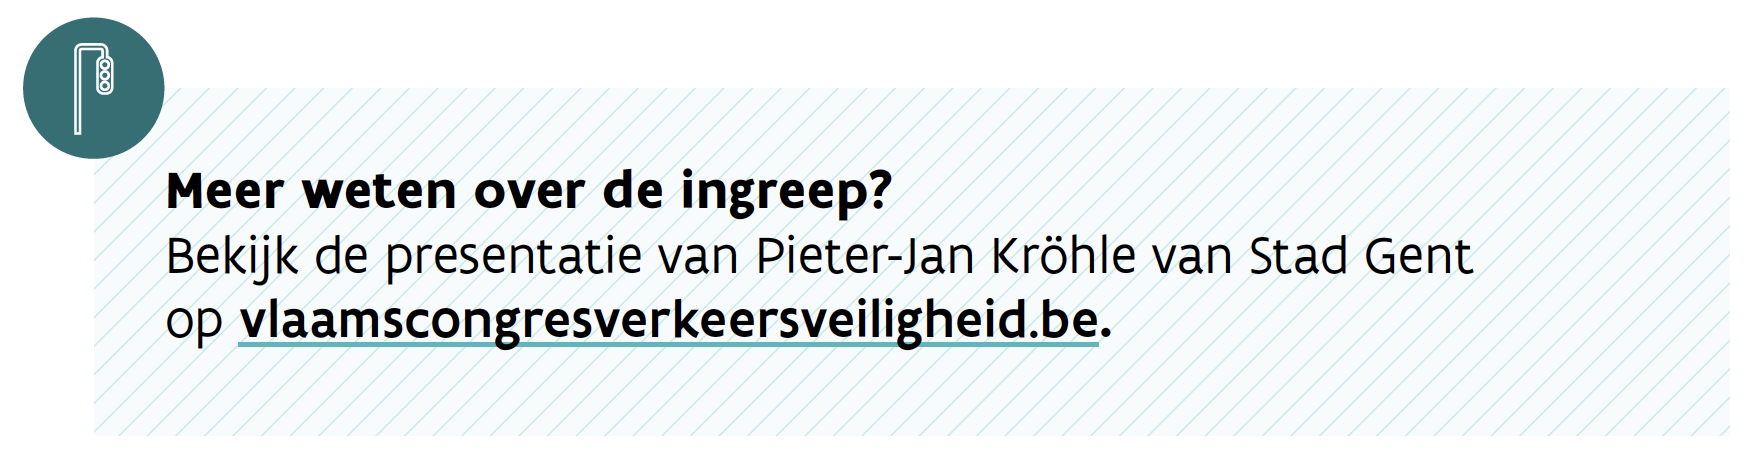 Kadertekst: Meer weten over de ingreep? Bekijk de presentatie van Pieter-Jan Kröhle van Stad Gent op vlaamscongresverkeersveiligheid.be.